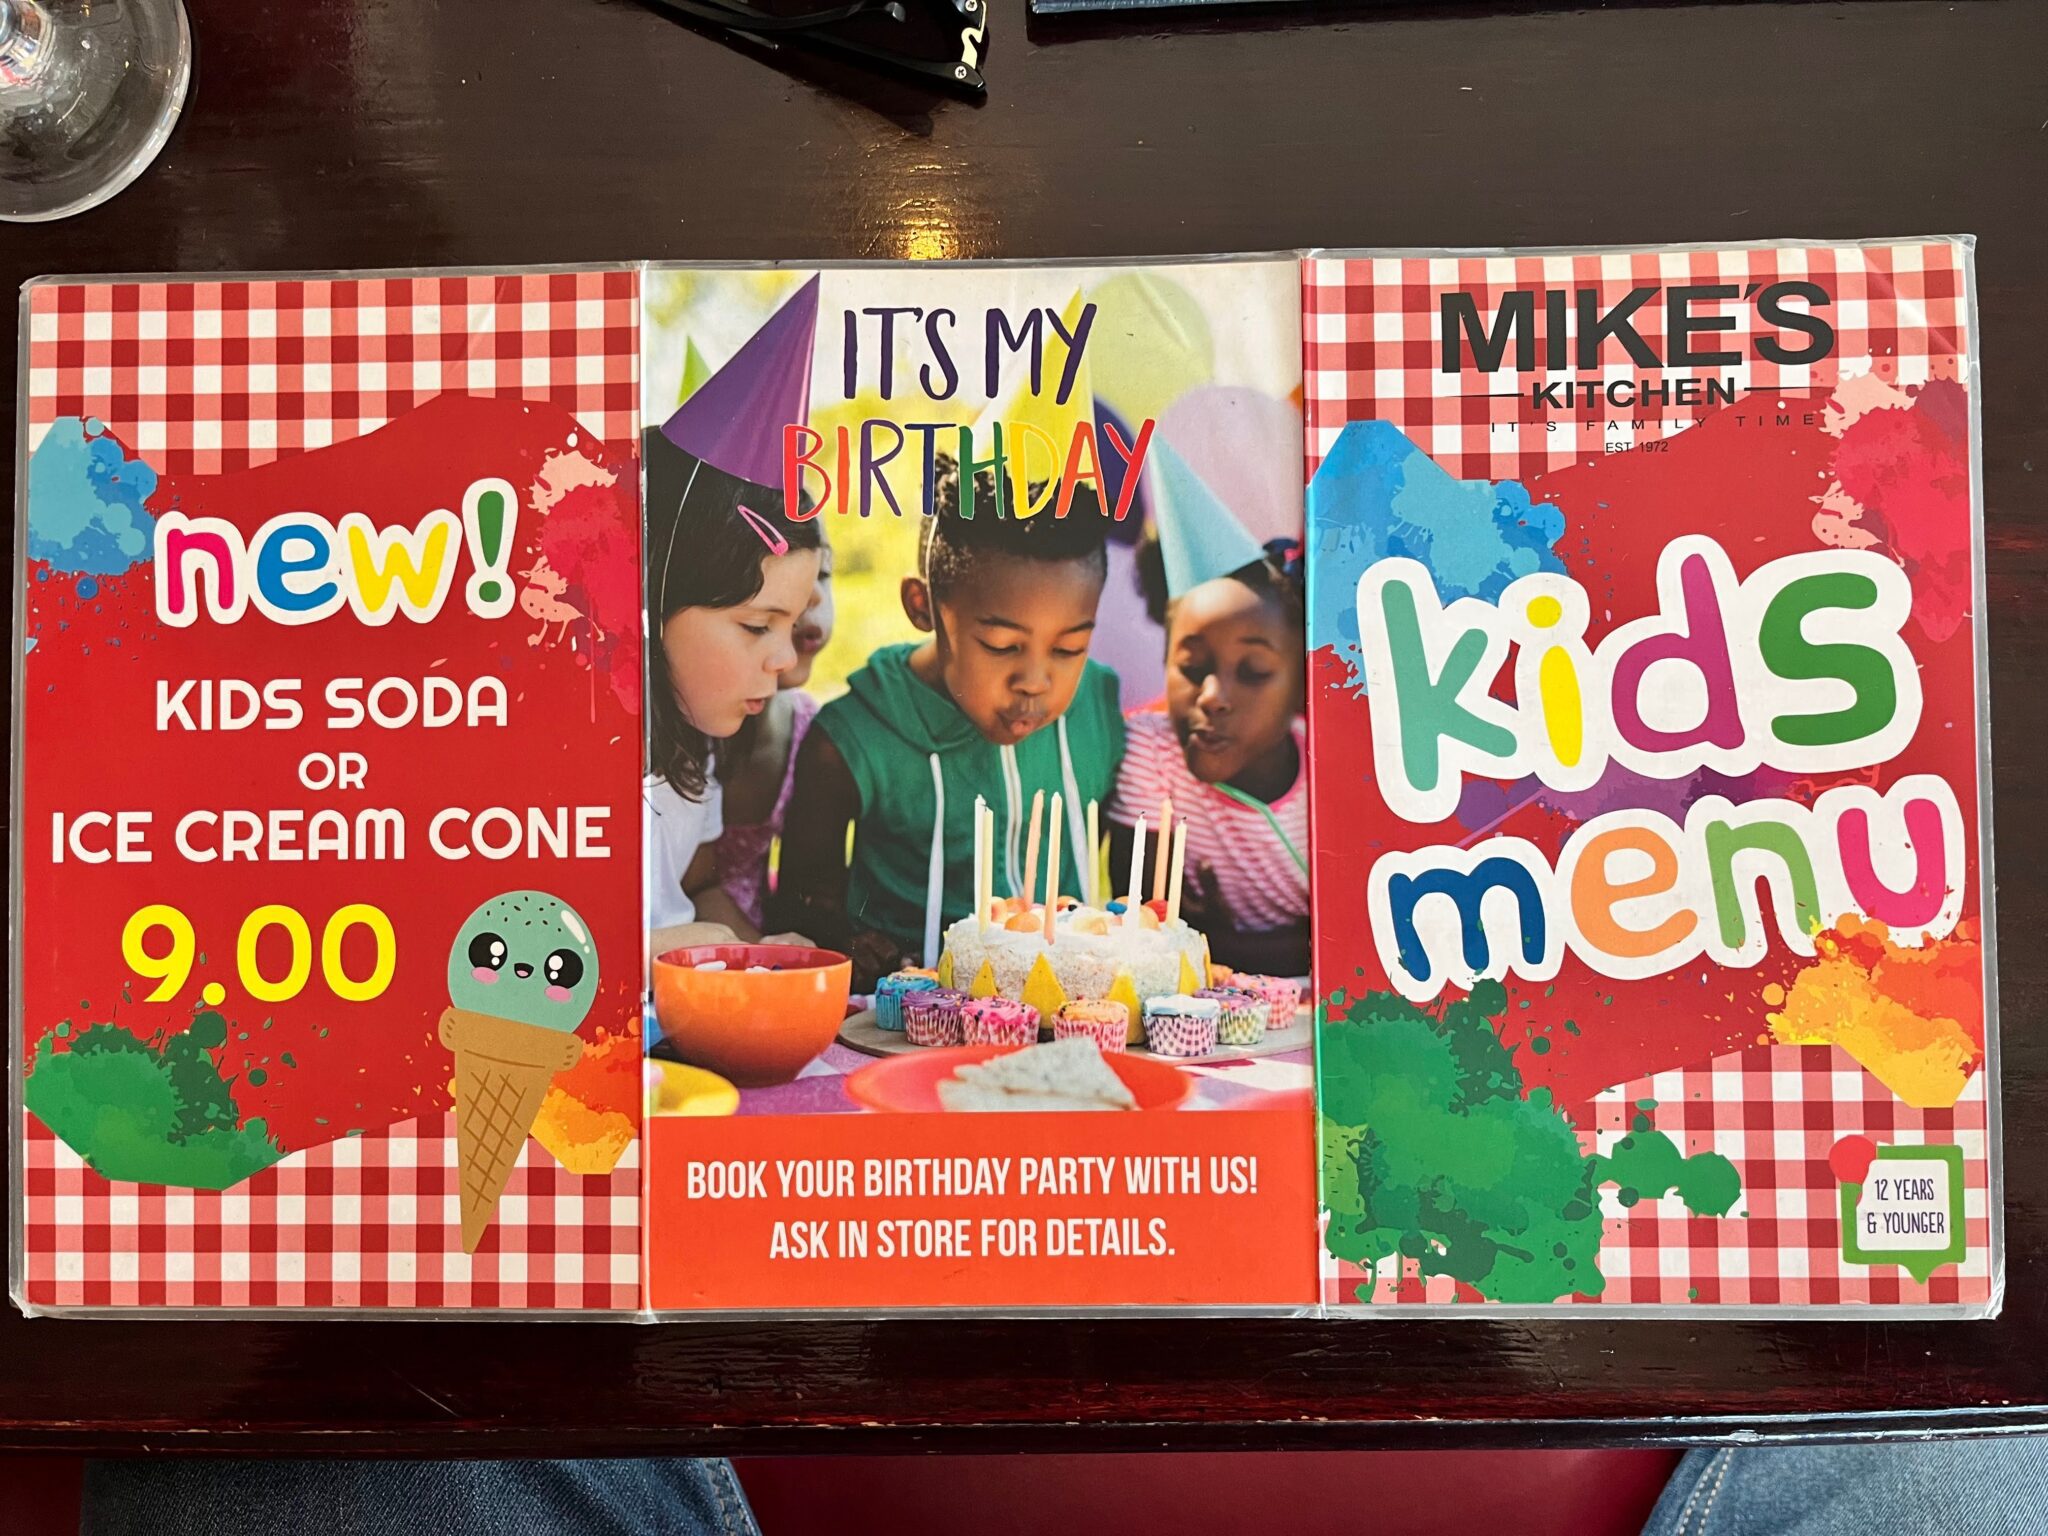 Mikes Kitchen Kids Menu 2 1 2048x1536 